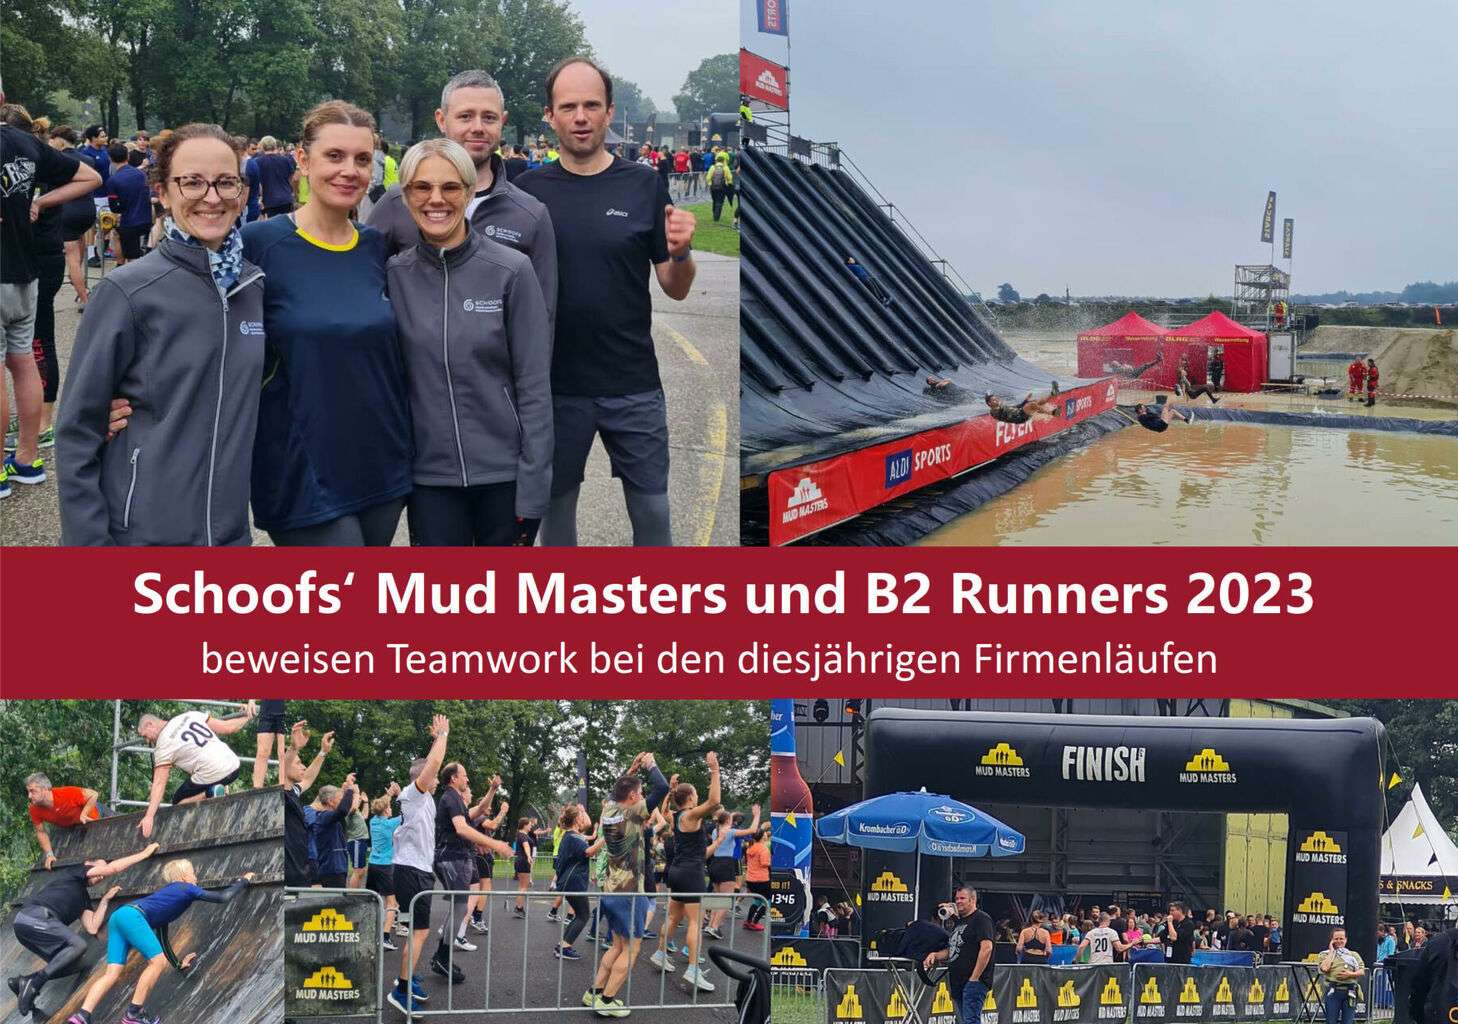 Eine echte Crew „leaves no one behind“! Schoofs‘ Mud Masters und B2 Runners beweisen Teamwork bei den diesjährigen Firmenläufen in Weeze und Köln.